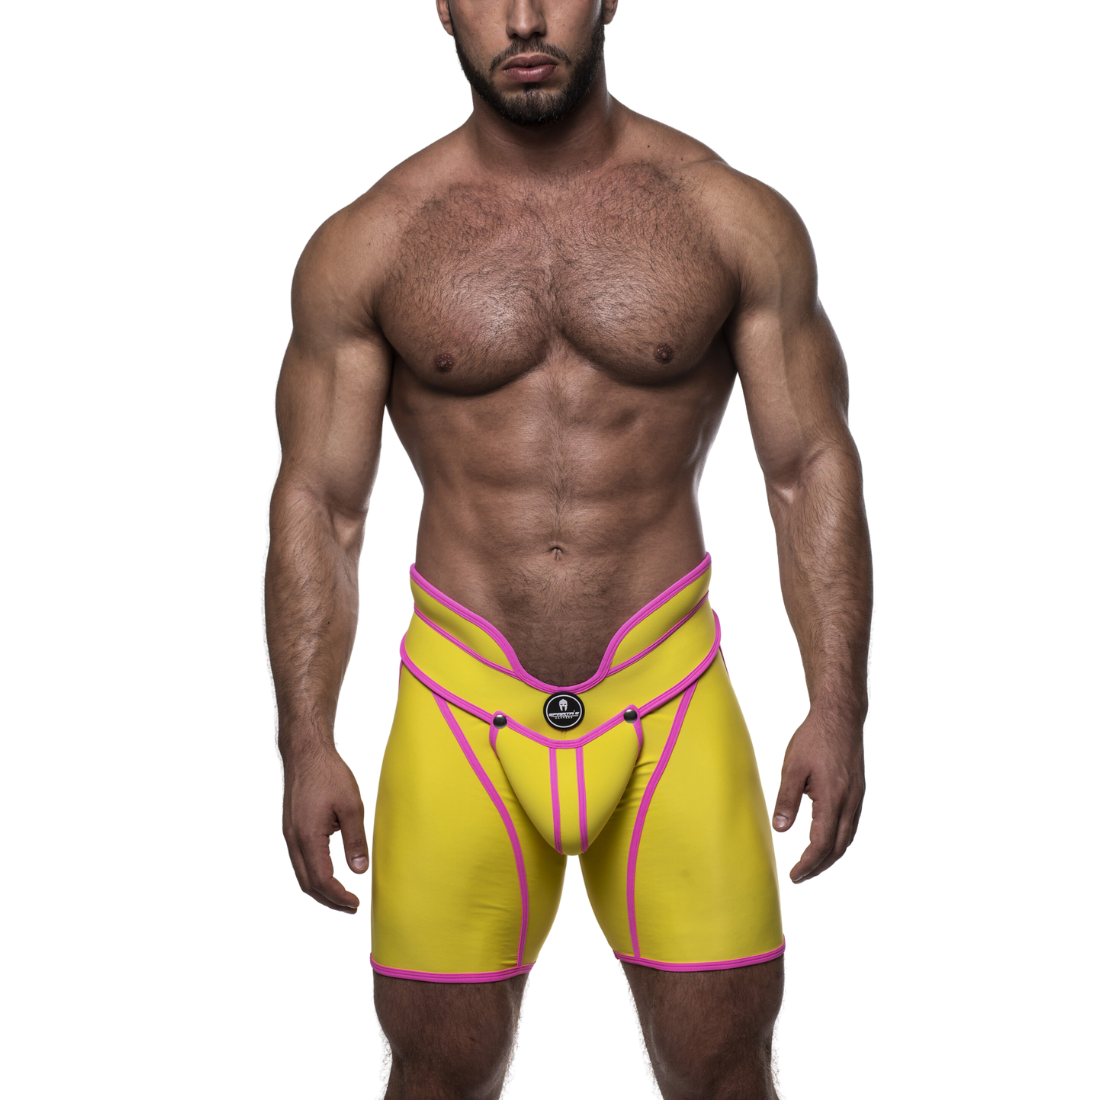 Unieke gele short met hoge tailleband en roze accenten, ontworpen door het Italiaanse modehuis Sparta’s Harness perfect voor gay mannen en te koop bij Flavourez.